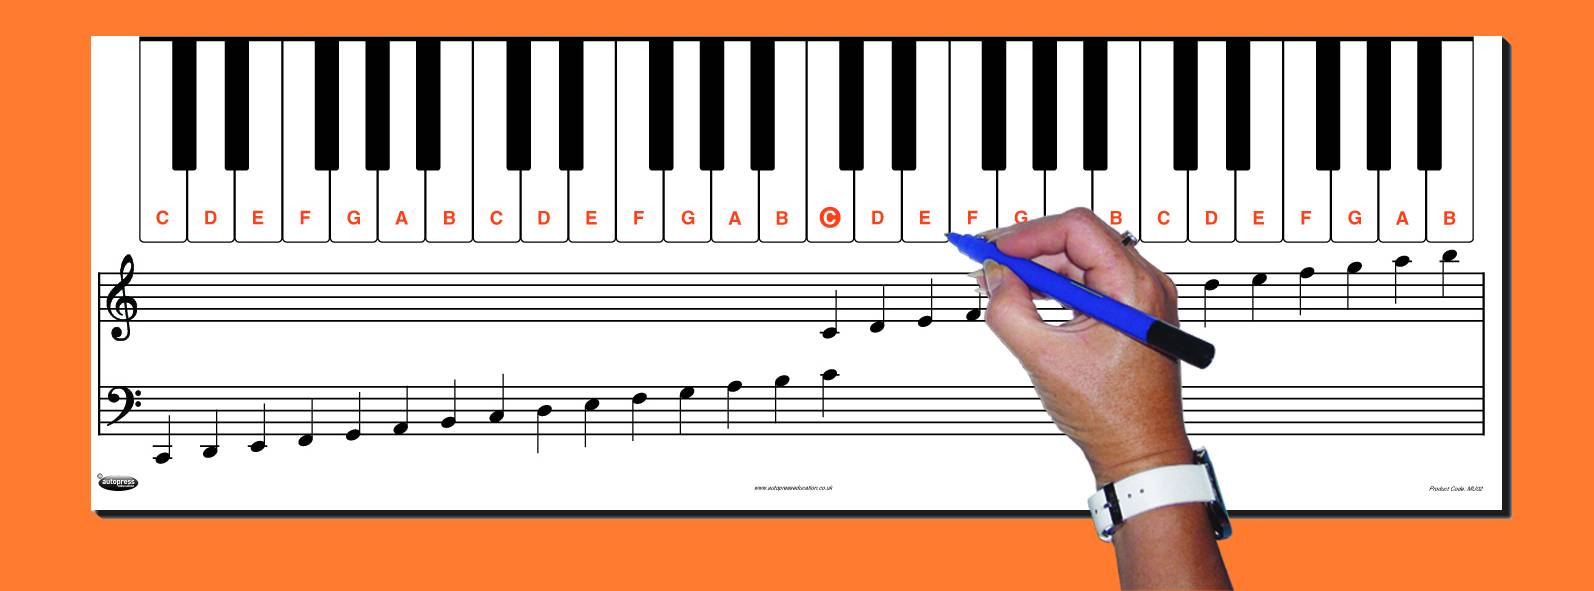 keyboard-note-chart-autopress-education